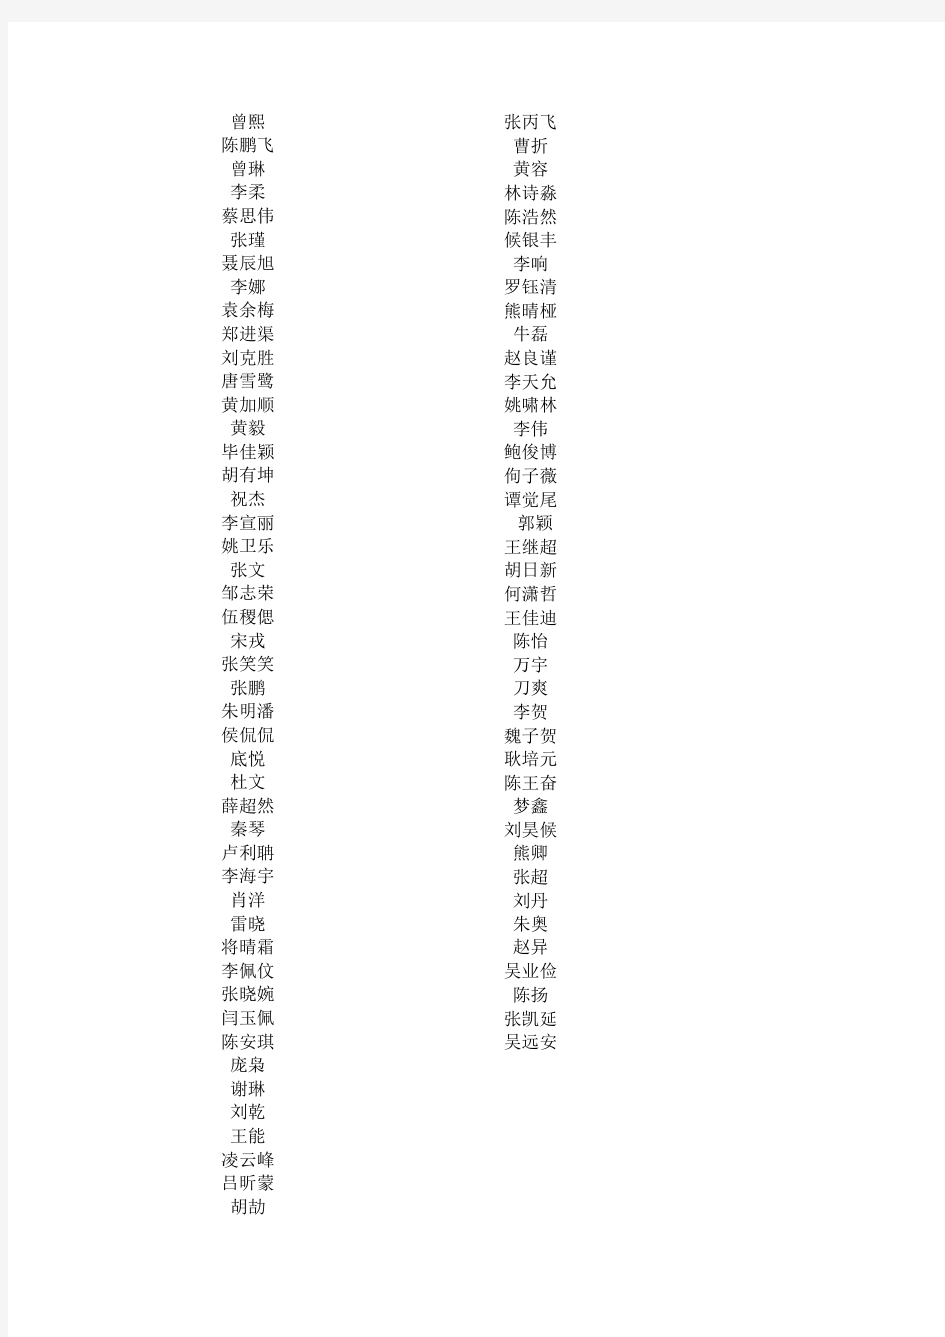 2013年四川省大学生 “综合素质A级证书”合格汇总公示